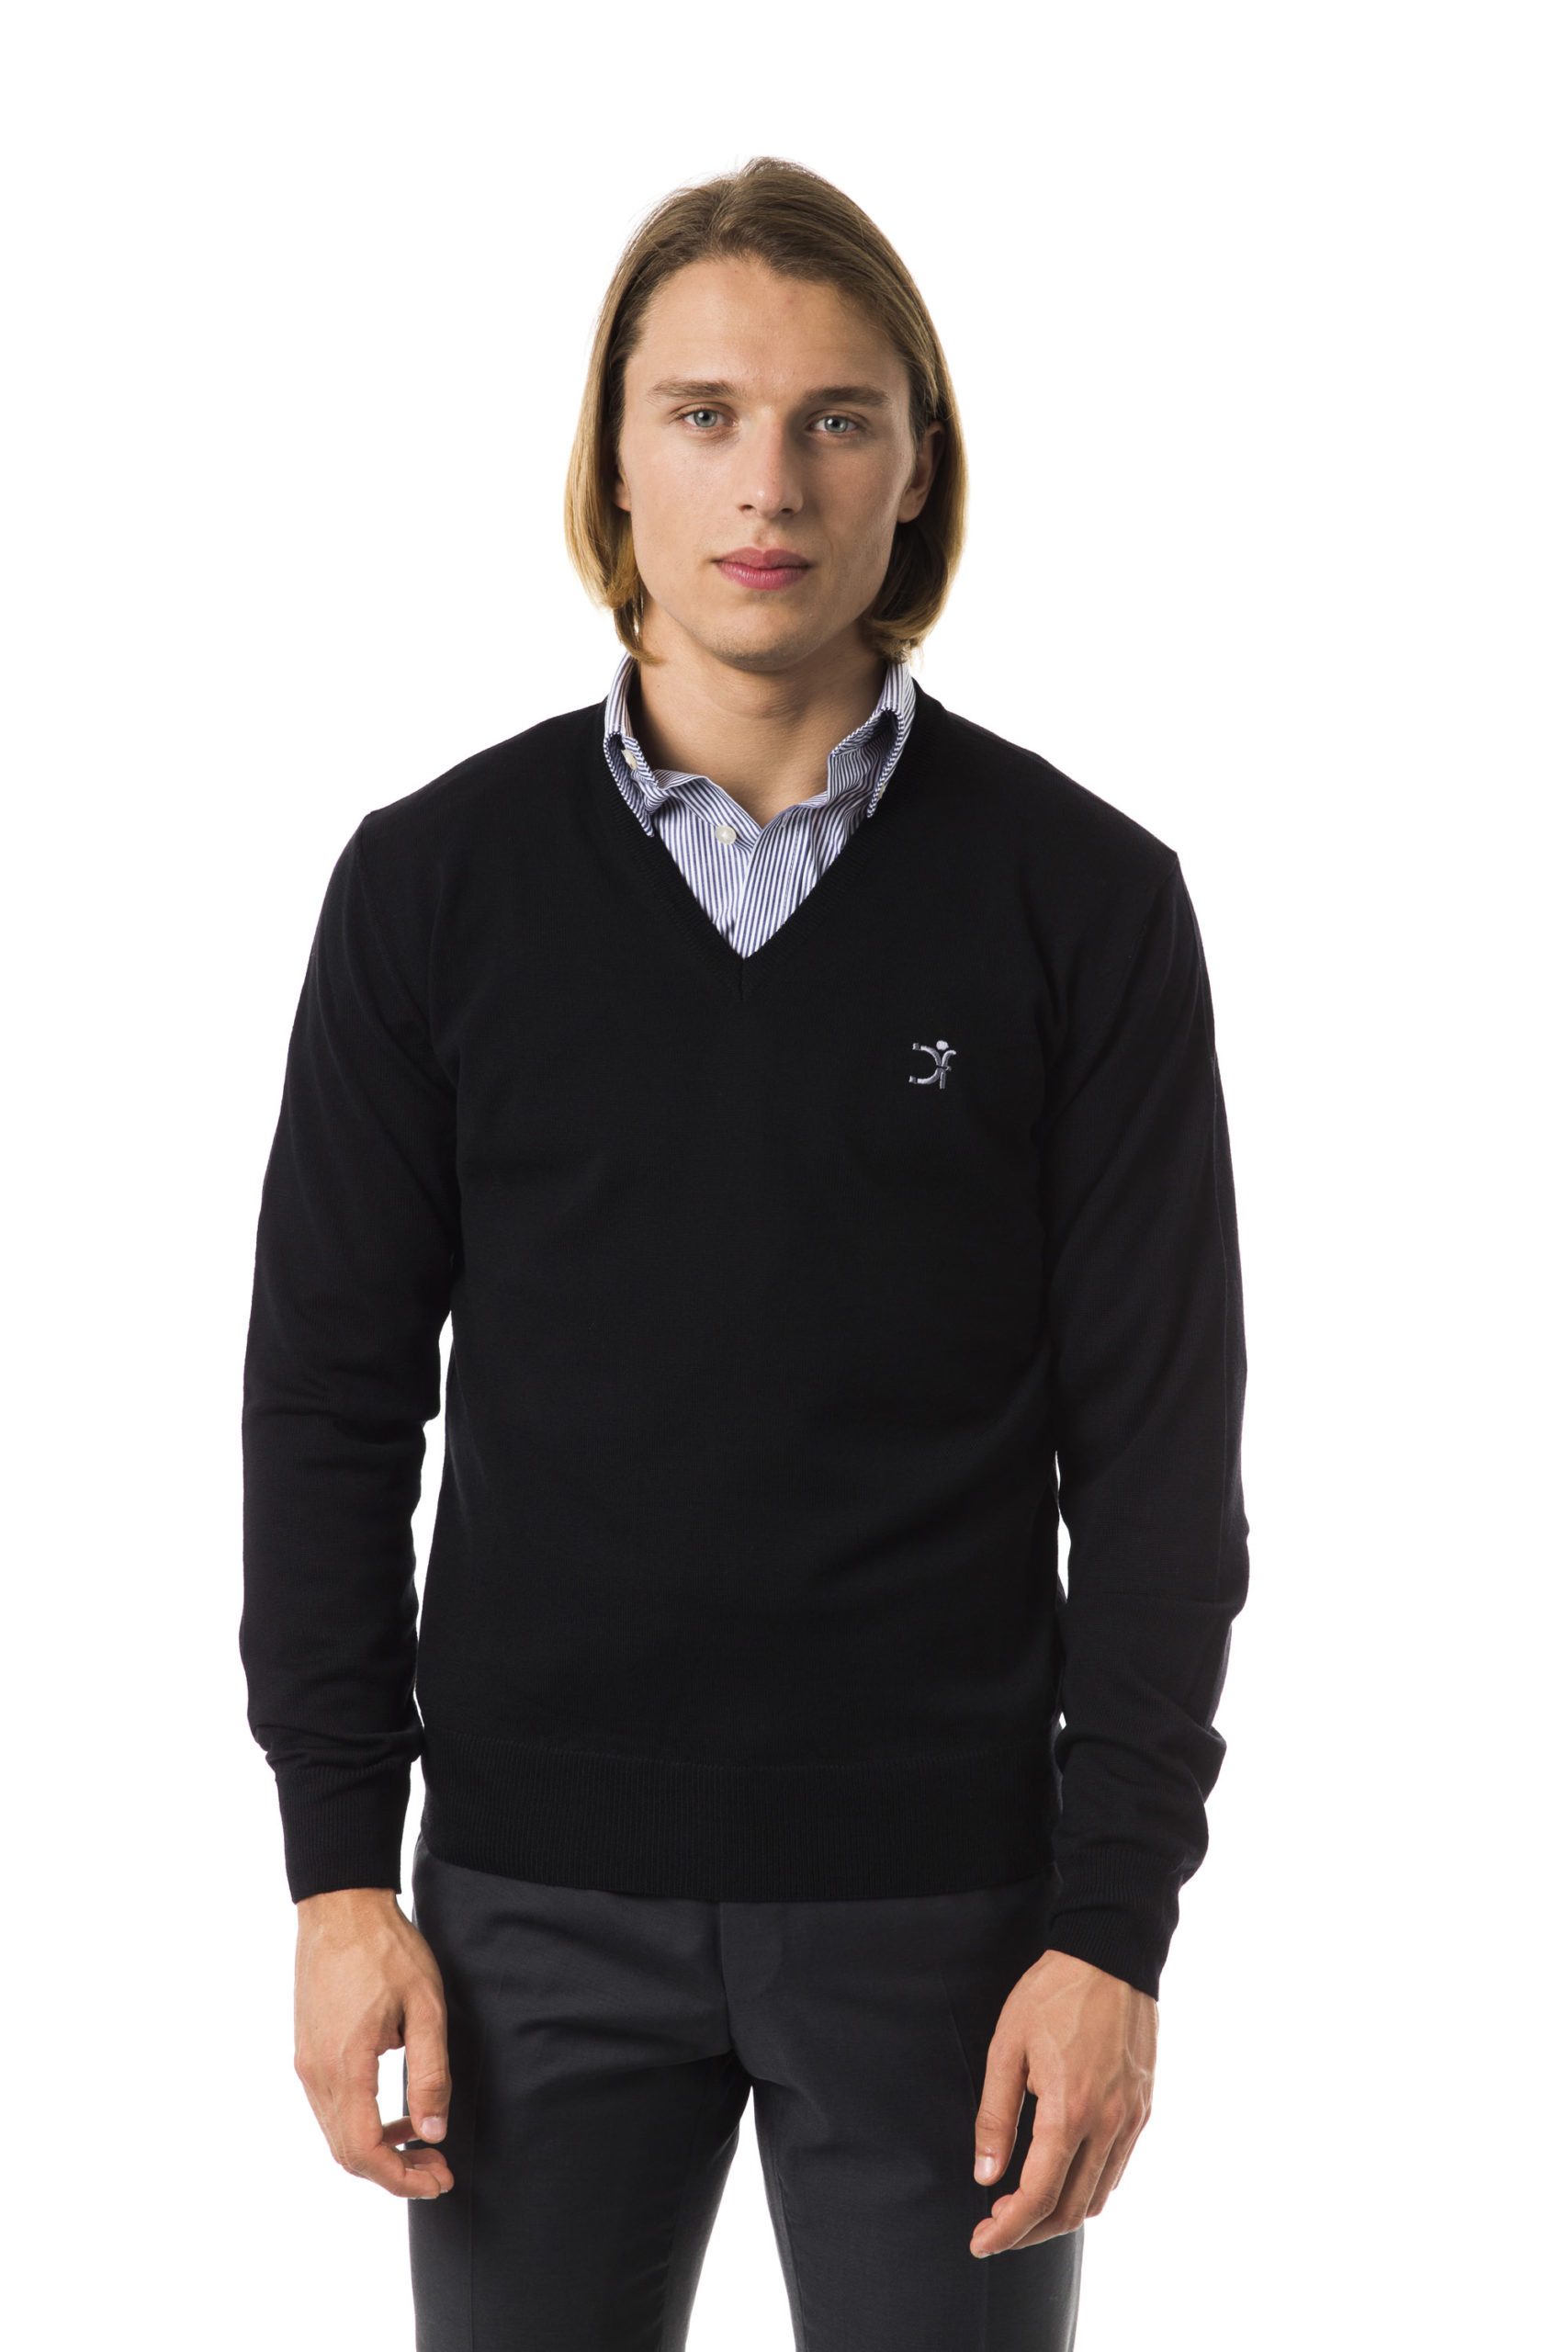 Uominitaliani Men's Nero Sweater Black UO816602 - XS